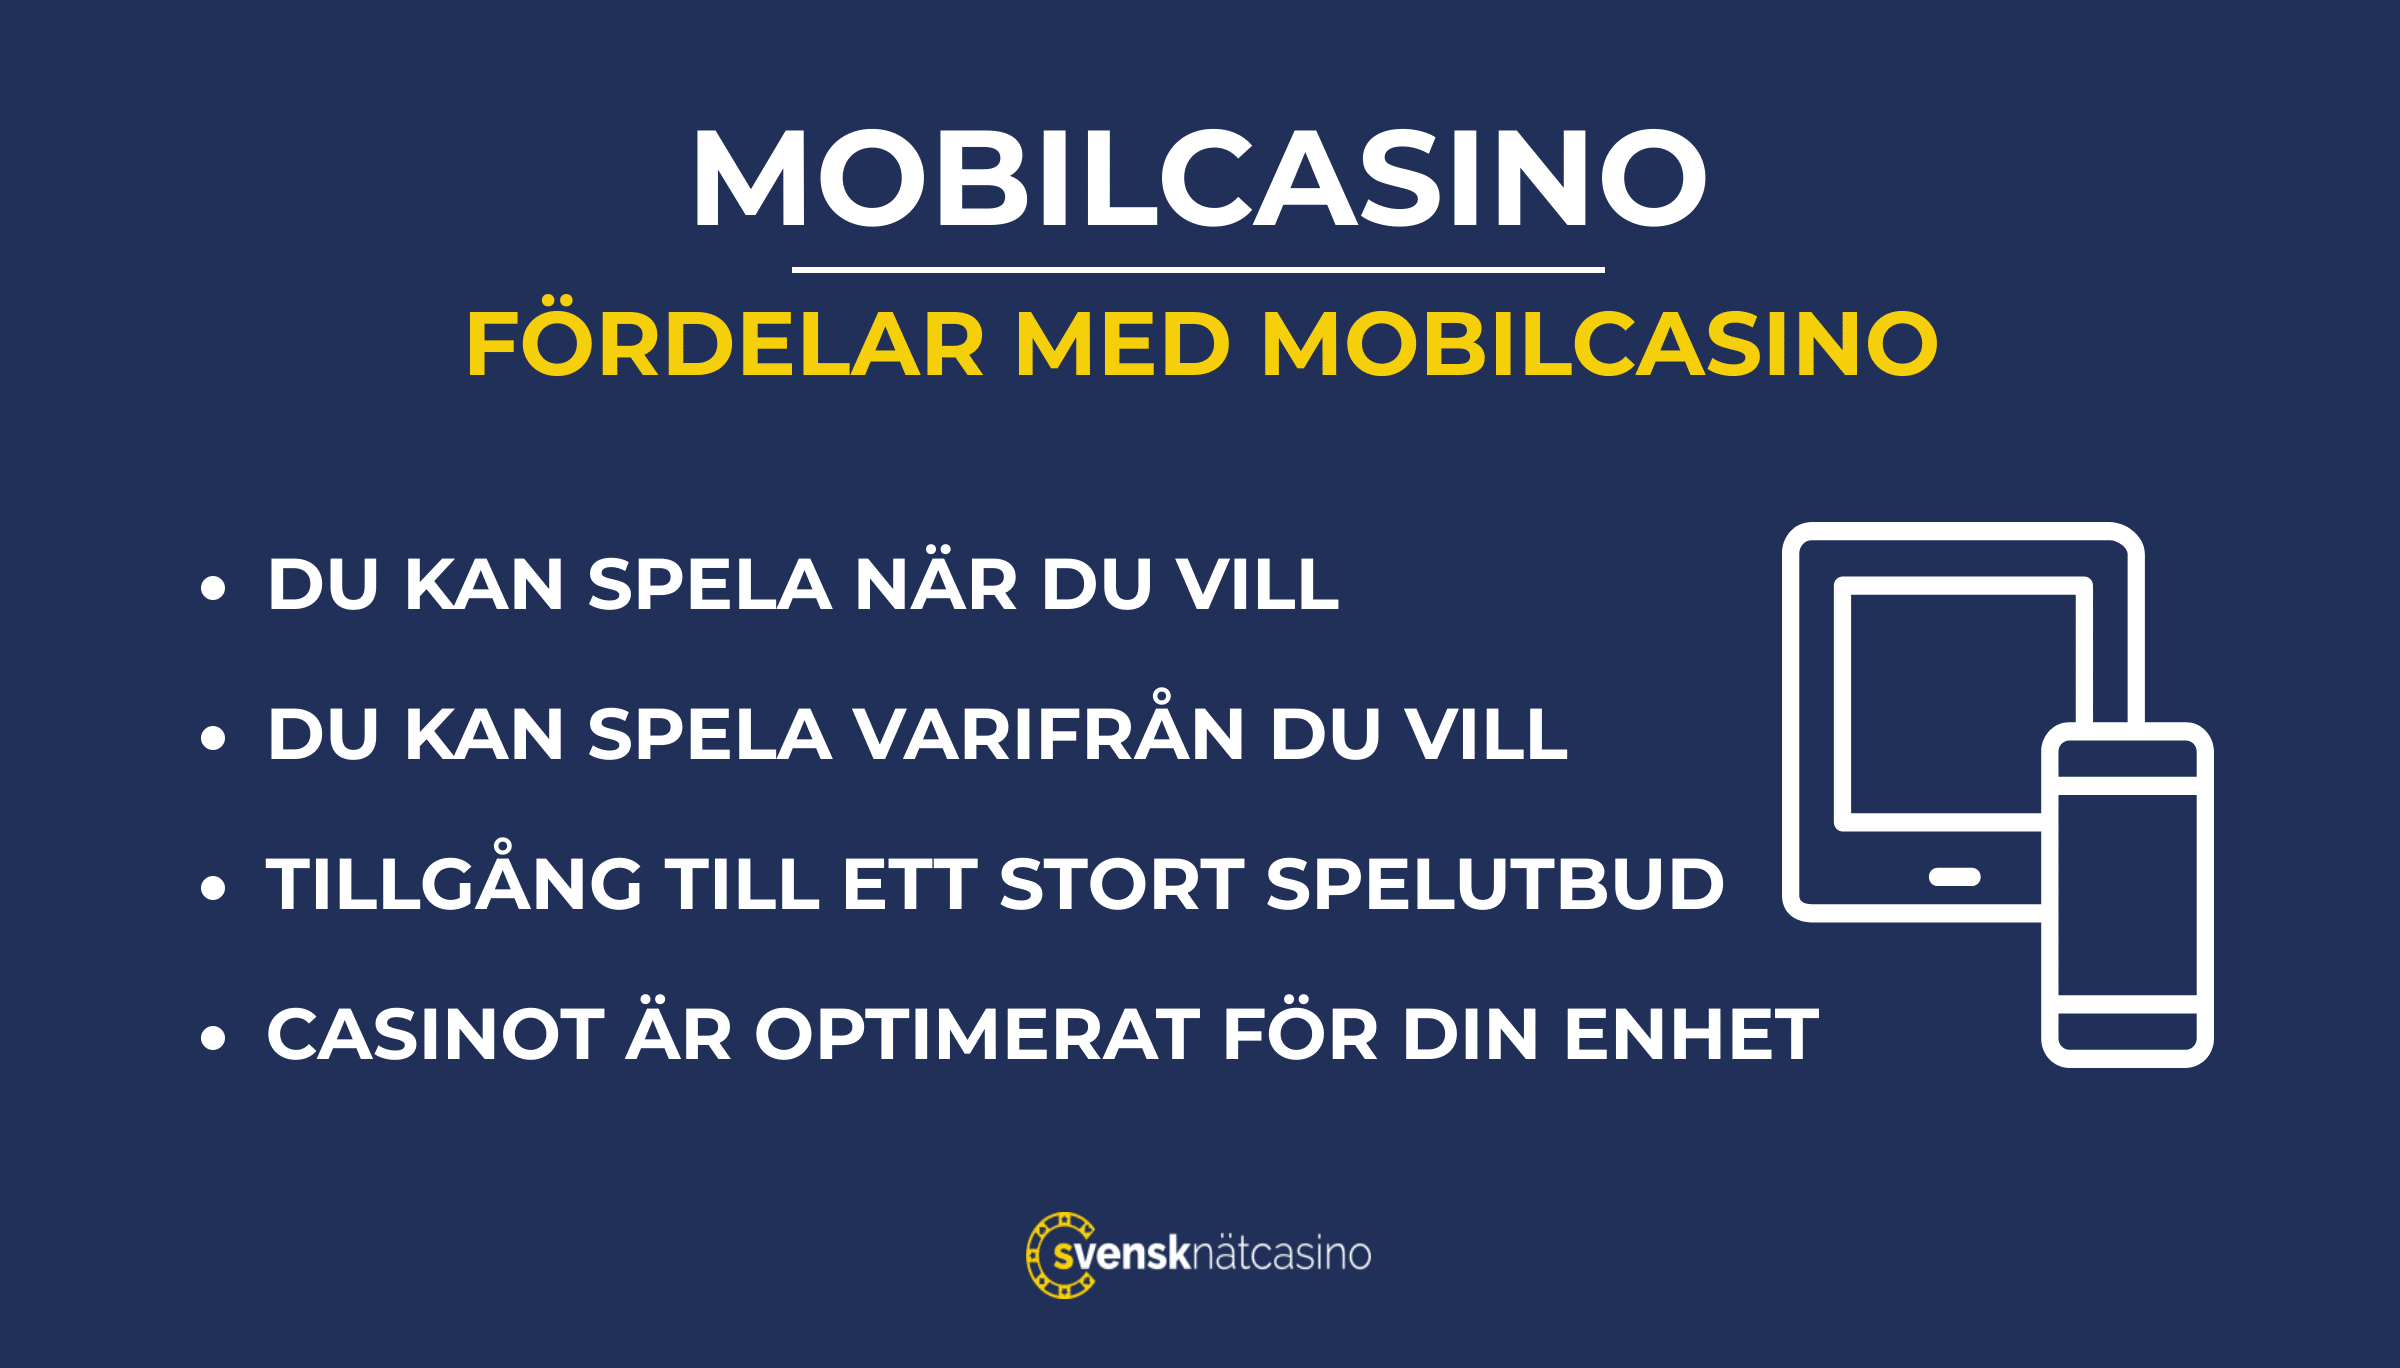 fördelar med mobilcasino i sverige svensknatcasino se